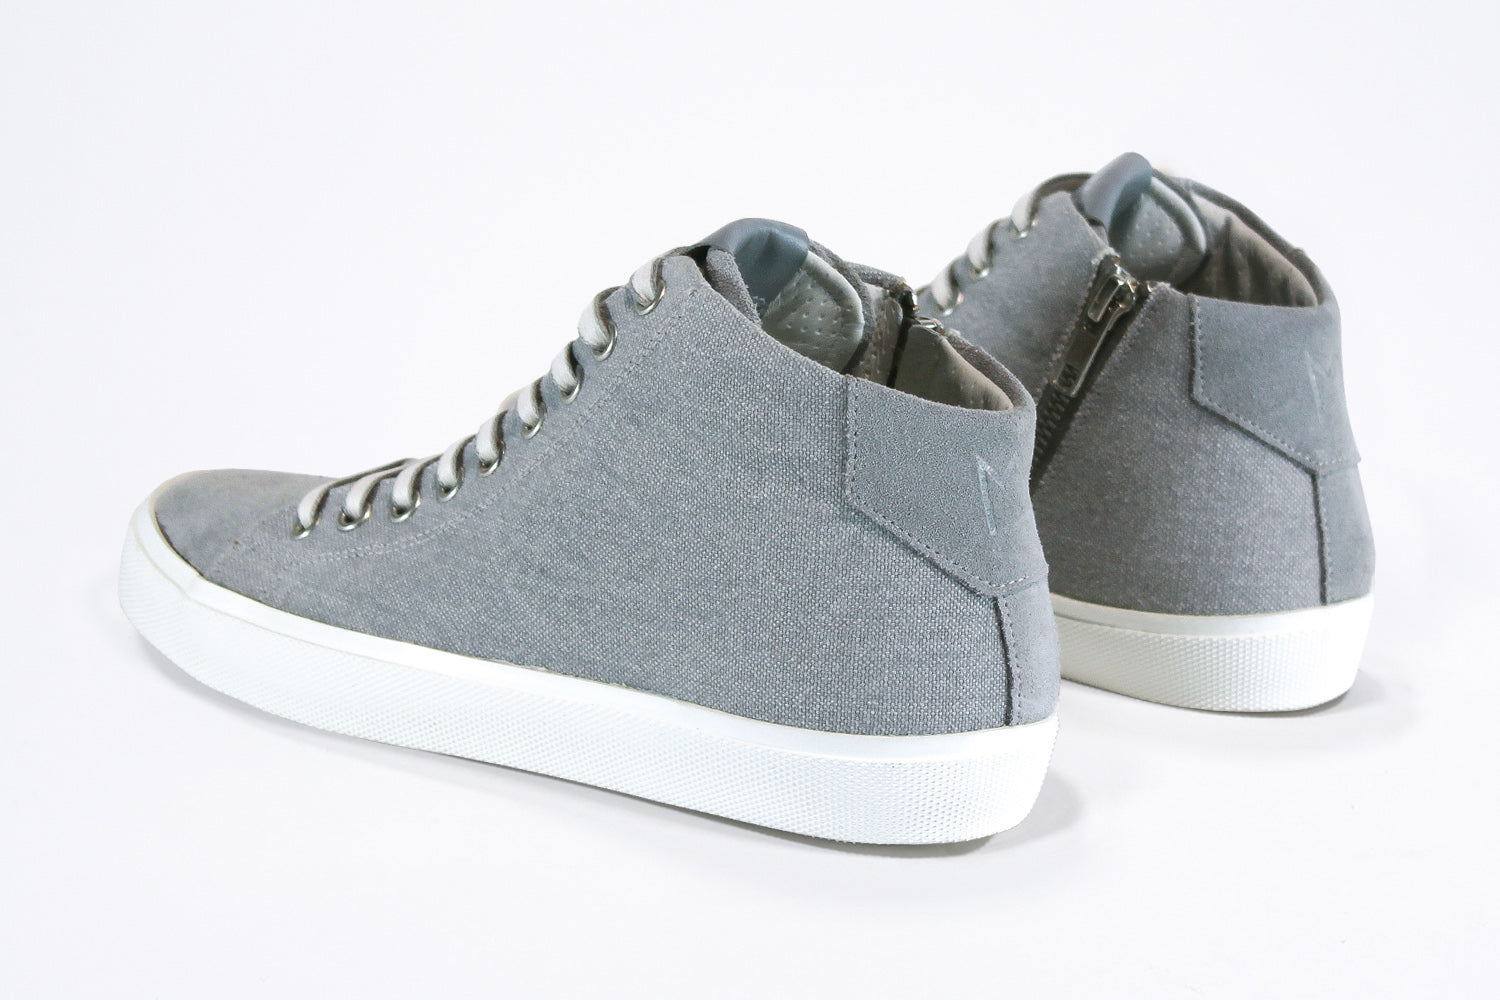 Dreiviertelansicht der Rückseite von sneaker mit durchgehendem grauem Canvas-Obermaterial, internem Reißverschluss und weißer Sohle.